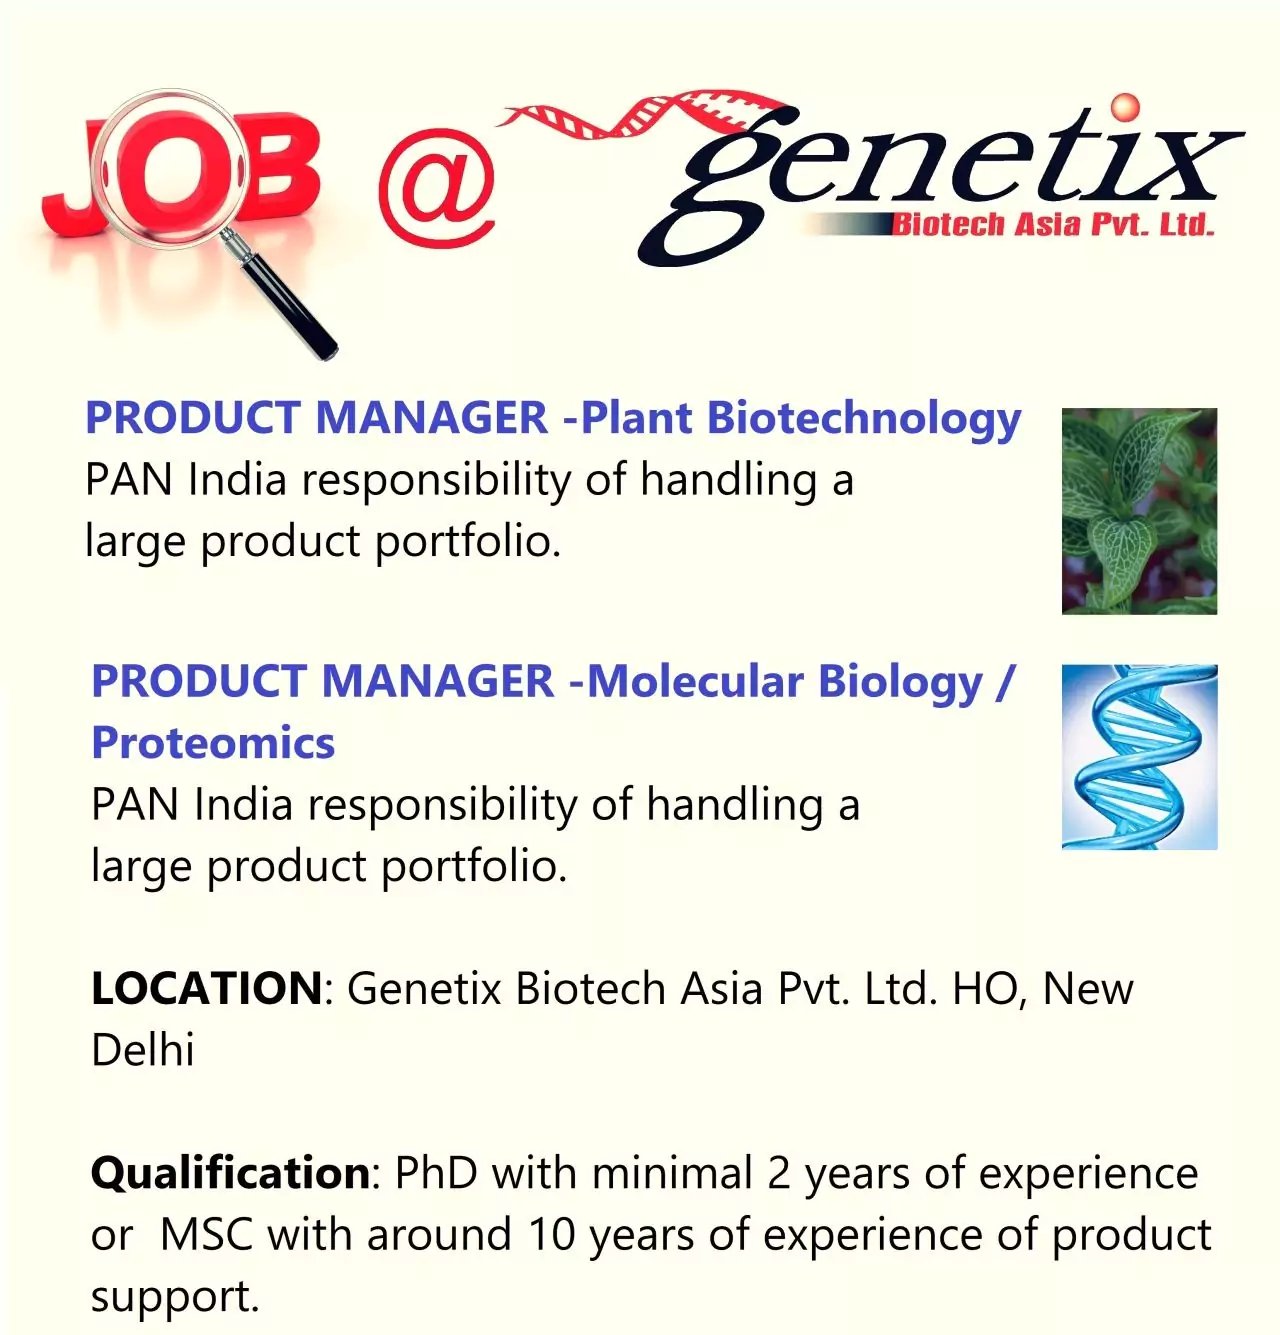 %titl genetixs biotech asia pvt ltd hiring product development6954168292163959420